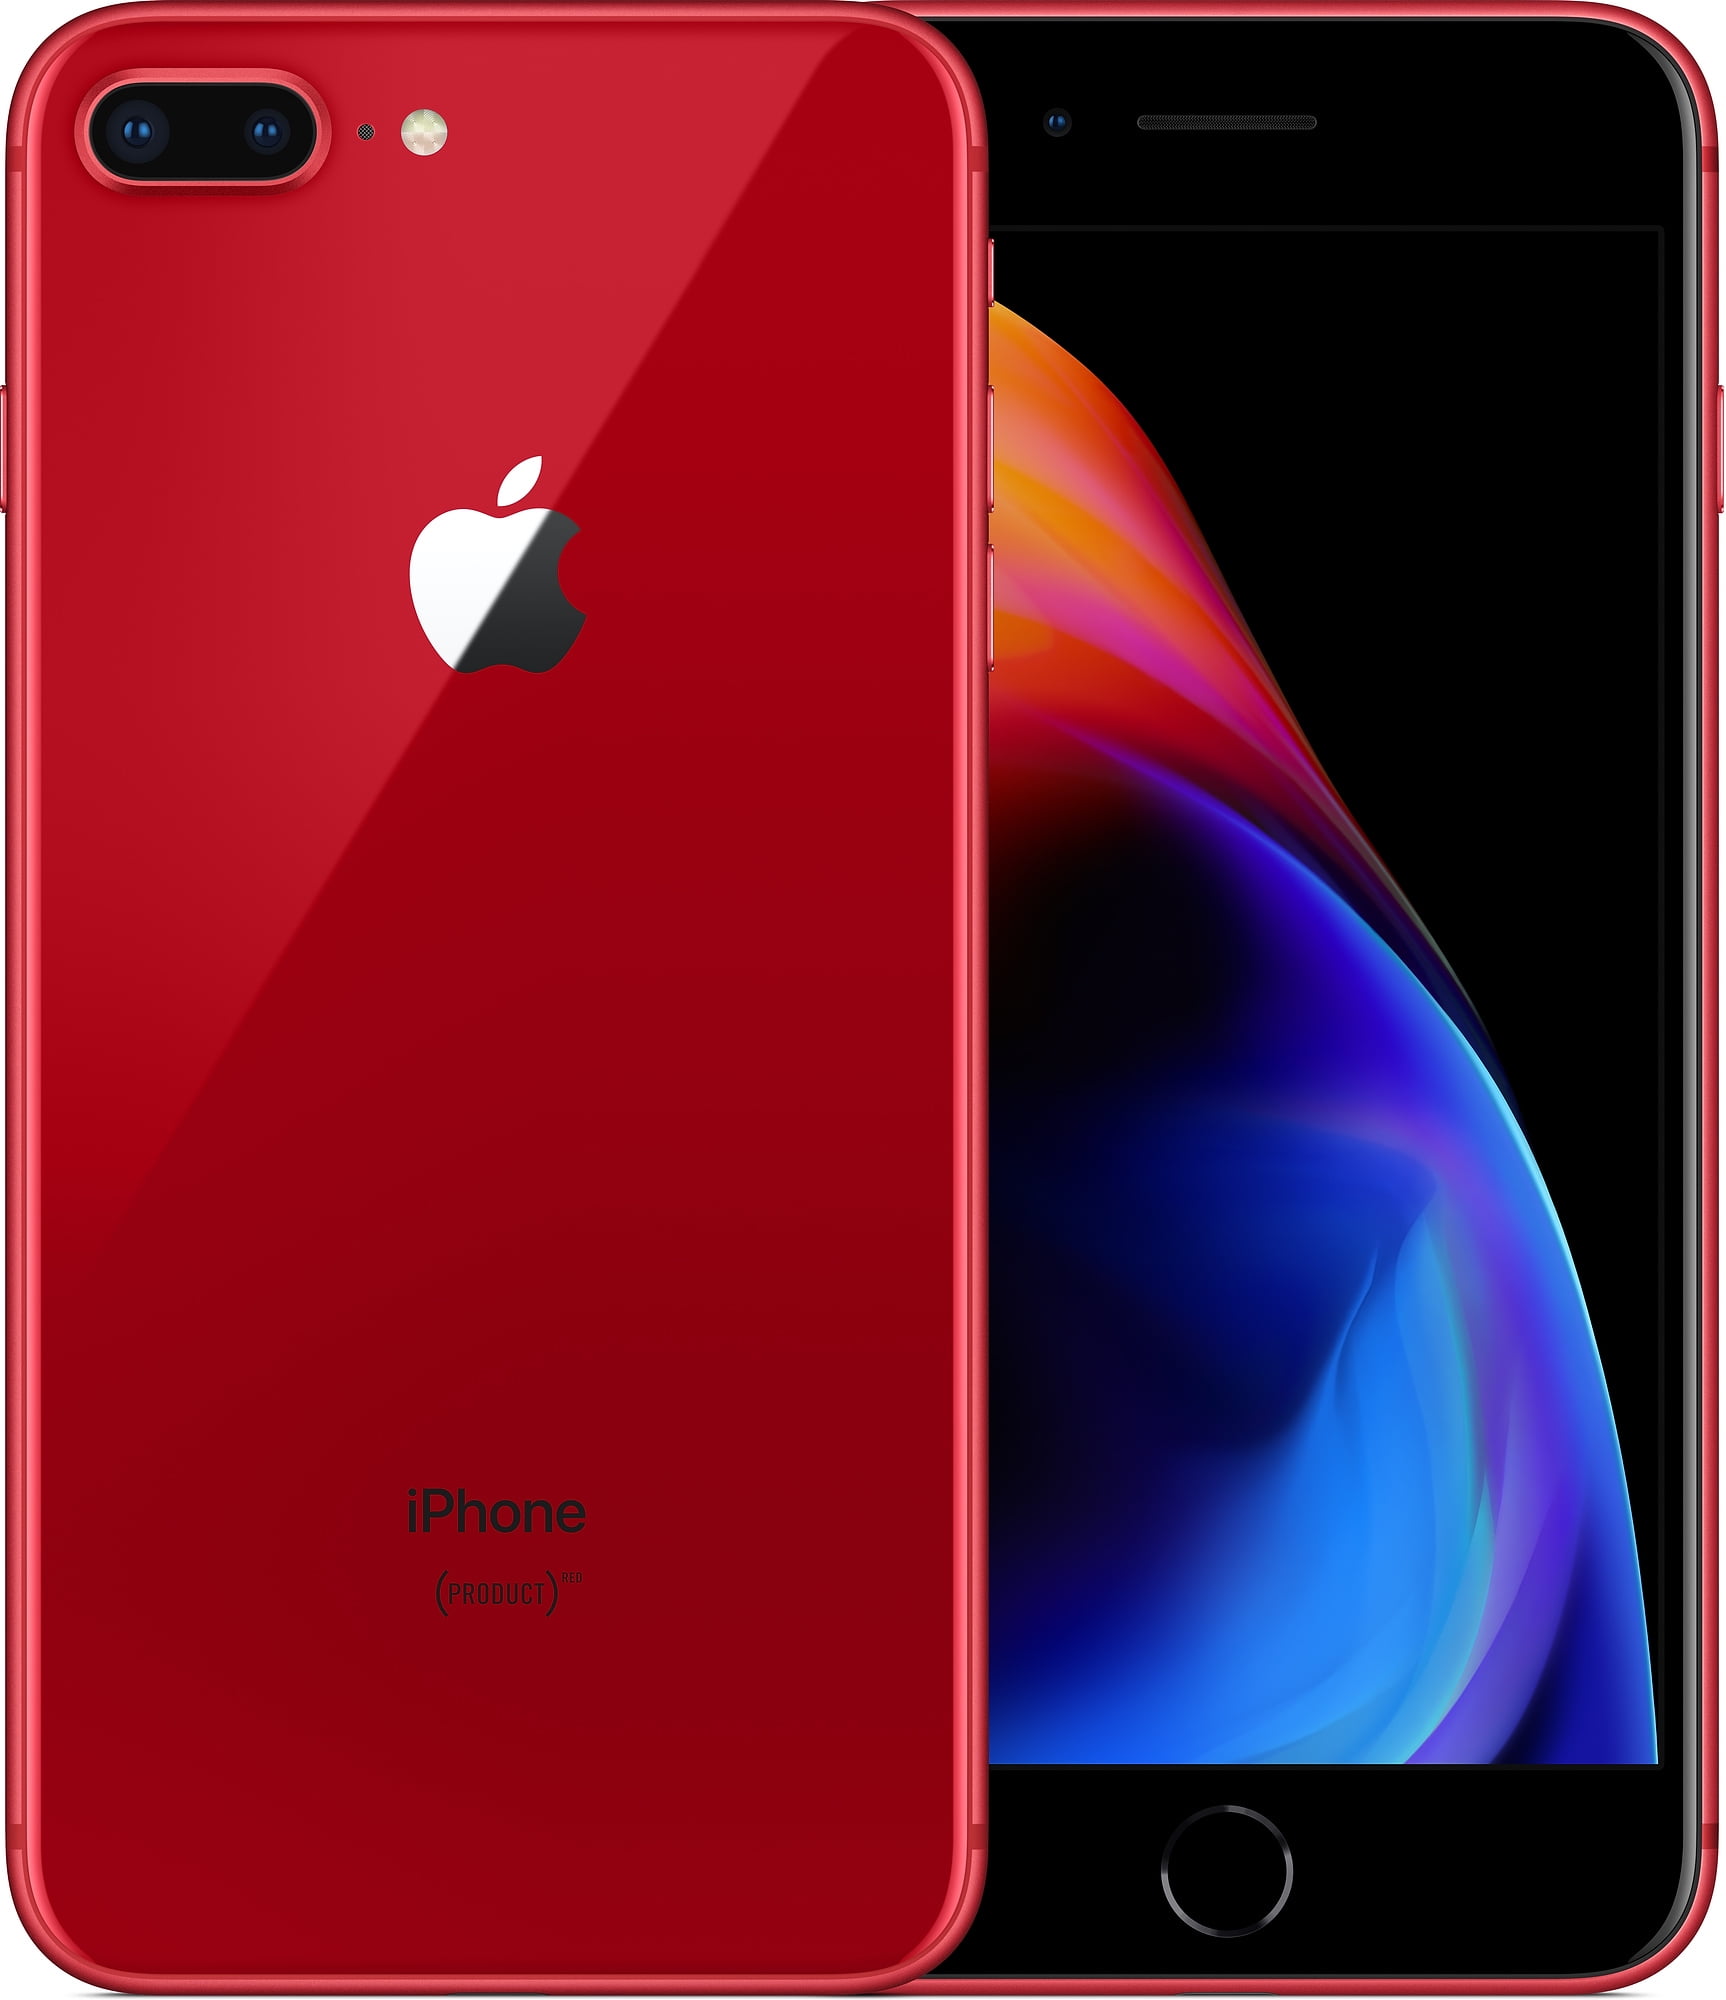 スマートフォン/携帯電話 スマートフォン本体 大人気商品 iPhone 8 64GB product red - 通販 - spiamericas.com